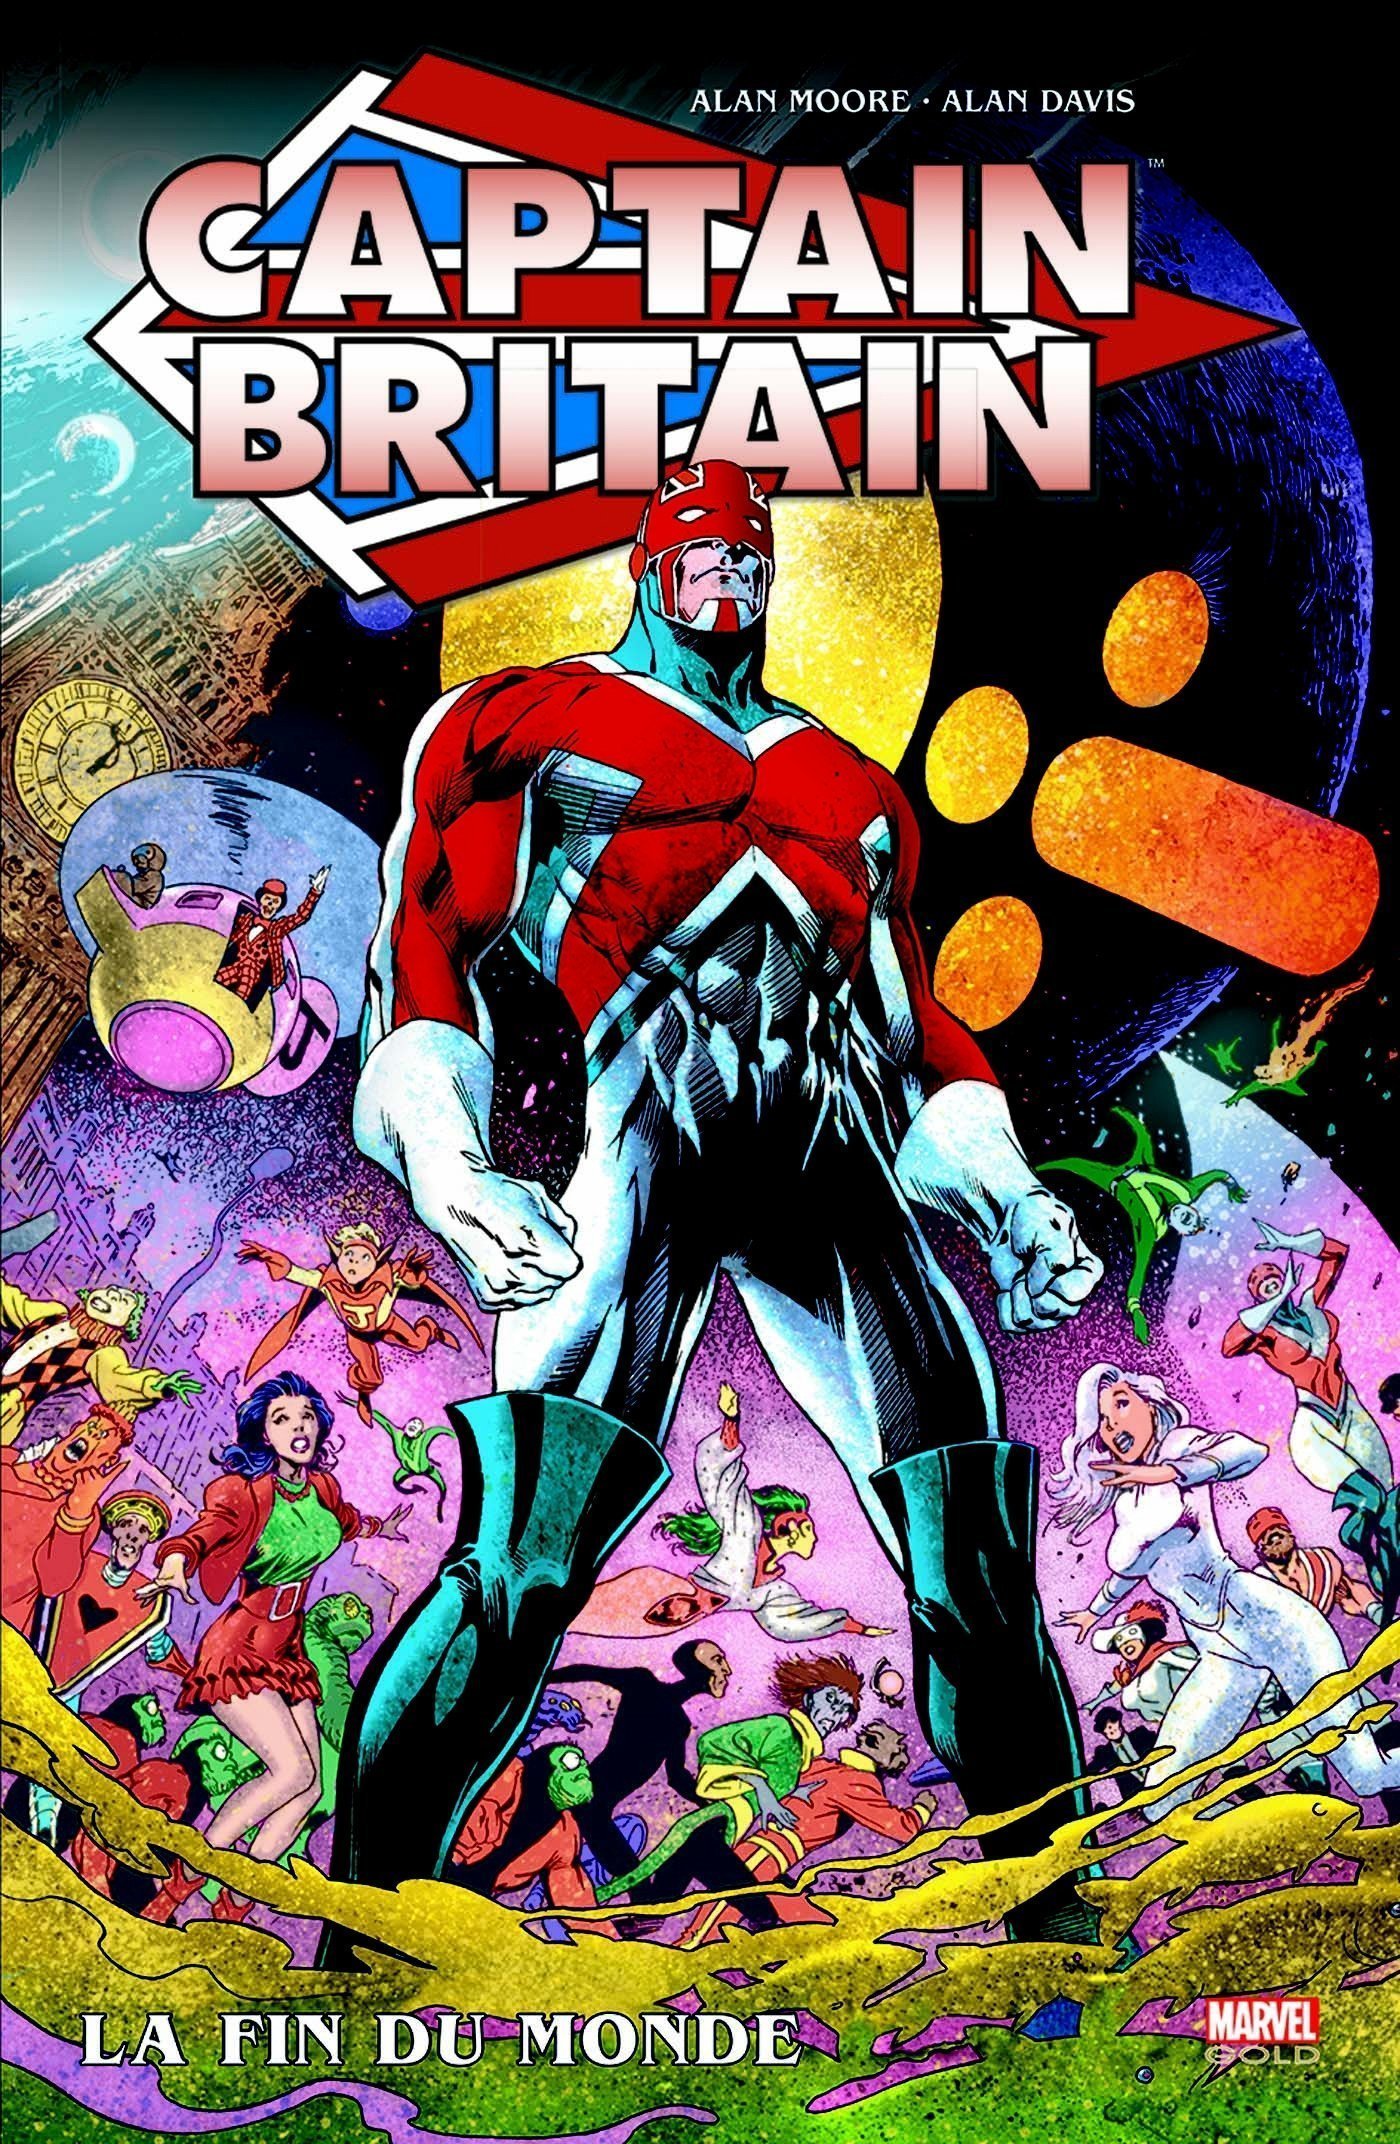 Couverture du comic Marvel, Captain Britain par Alan Davis et Alan Moore